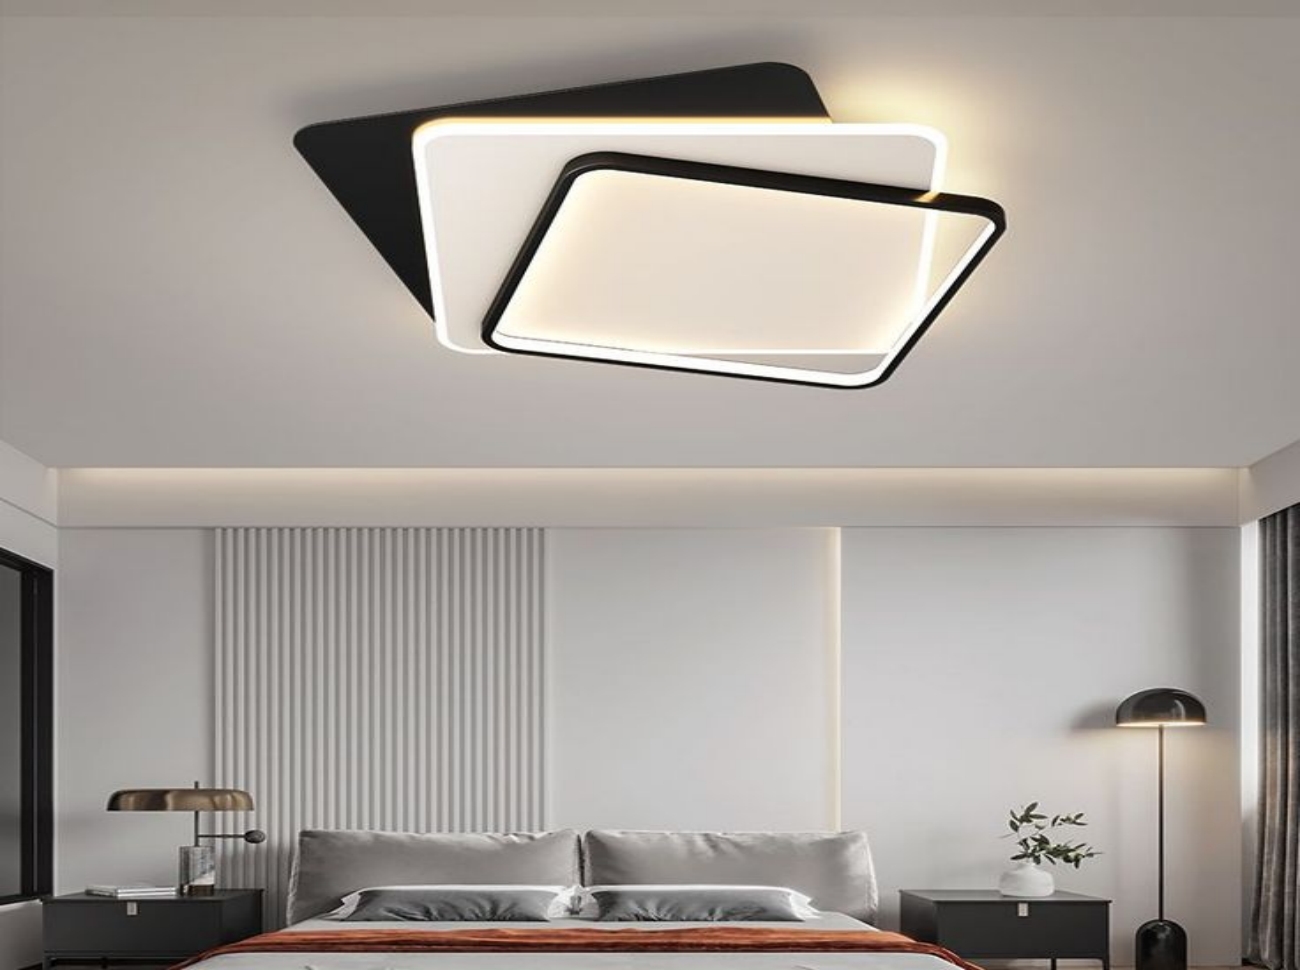 Plafonnier LED : une solution d'éclairage moderne performante, écologique et économe en énergie-À propos de l'éclairage--Creative LED Ceiling Light Square Ceiling Lamp For Bedroom Living 副本